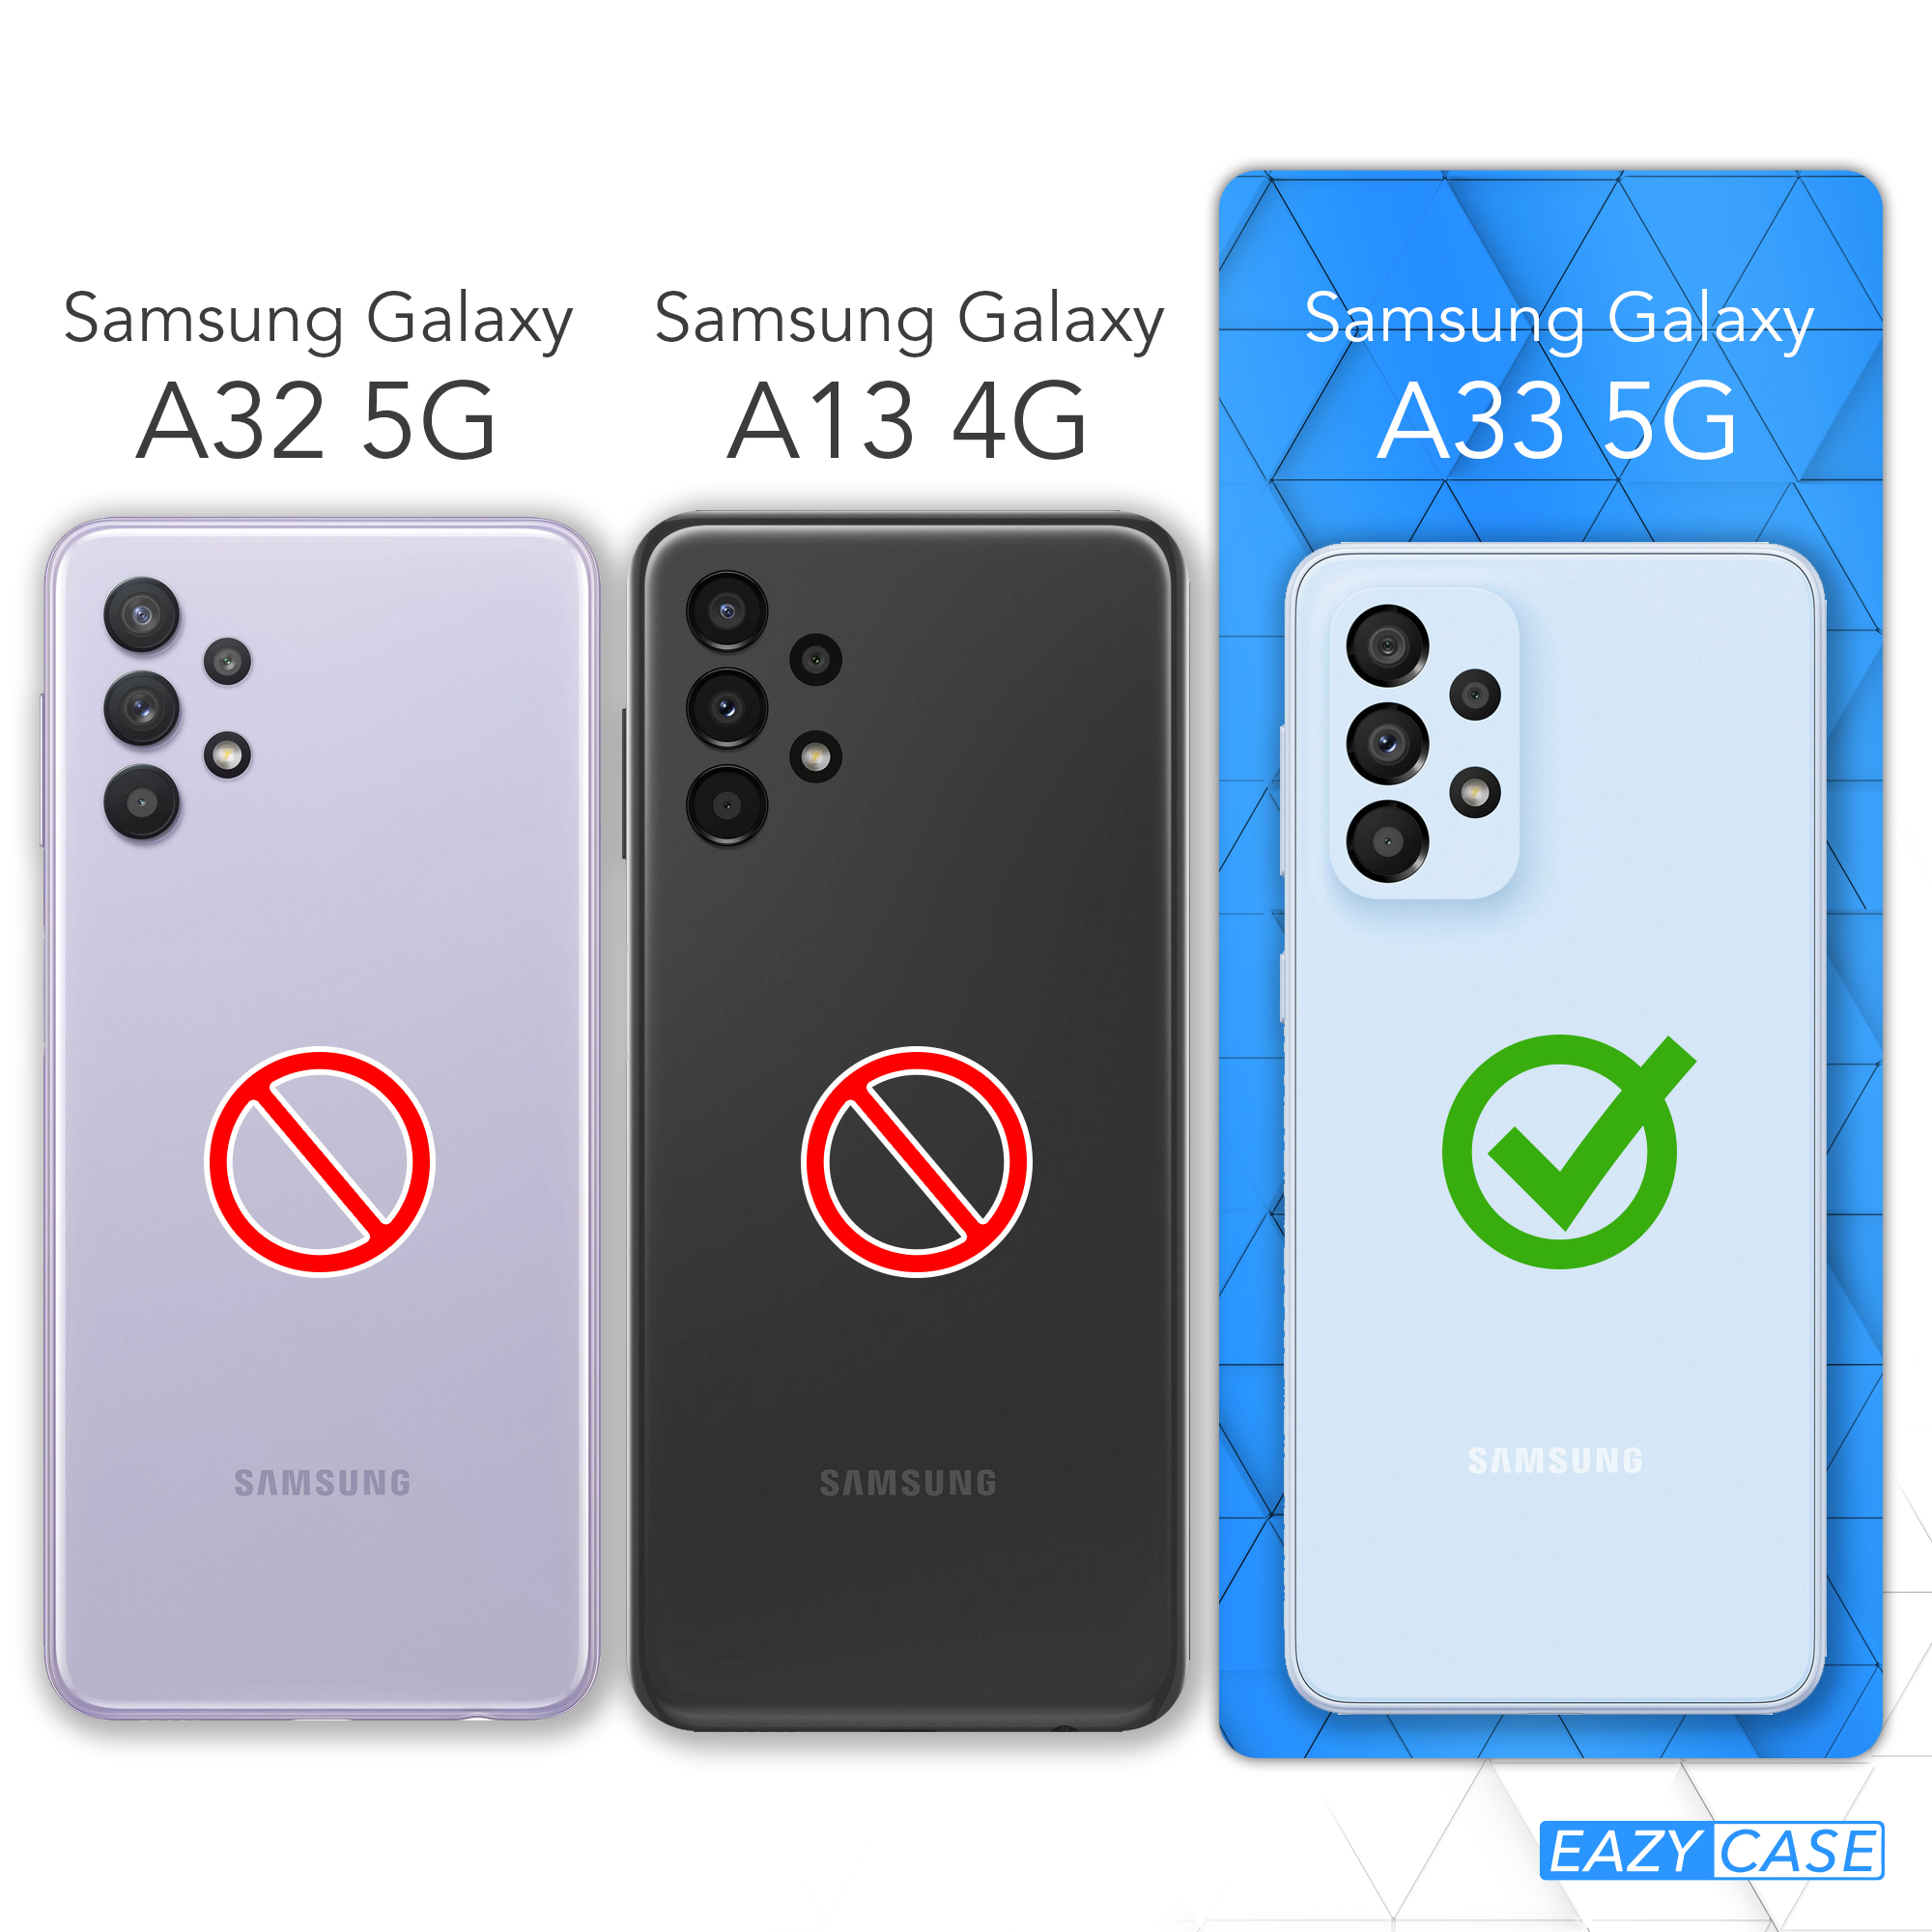 Galaxy Flüssig, Glitzerhülle EAZY CASE Samsung, A33 5G, Backcover, Blau